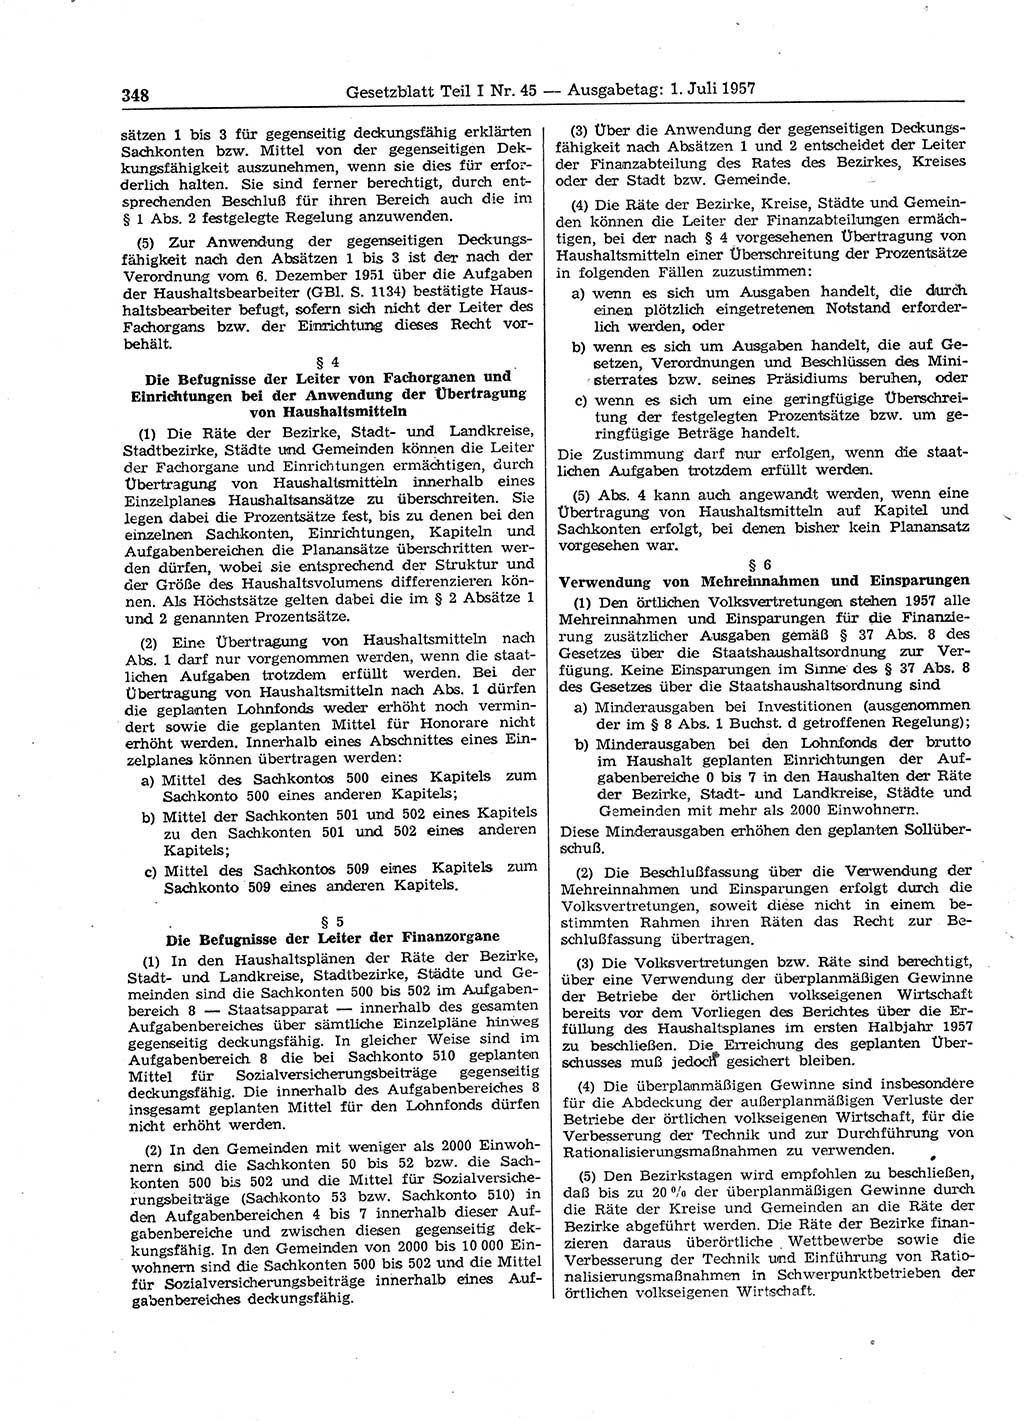 Gesetzblatt (GBl.) der Deutschen Demokratischen Republik (DDR) Teil Ⅰ 1957, Seite 348 (GBl. DDR Ⅰ 1957, S. 348)